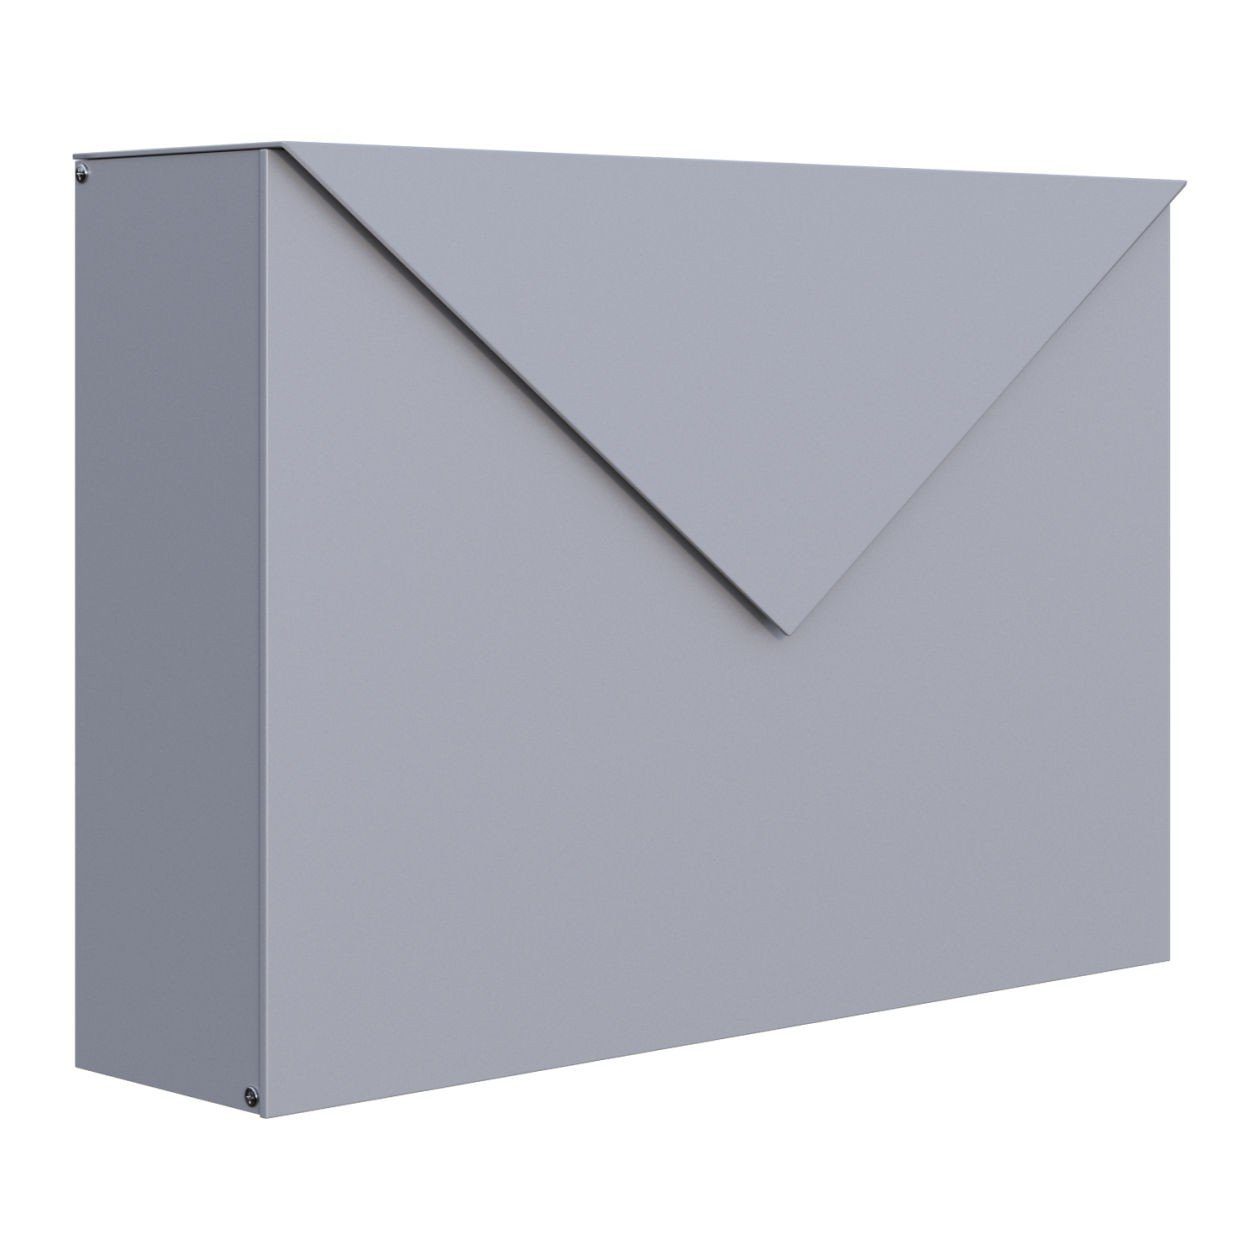 Bravios Briefkasten Briefkasten Letter Grau Metallic